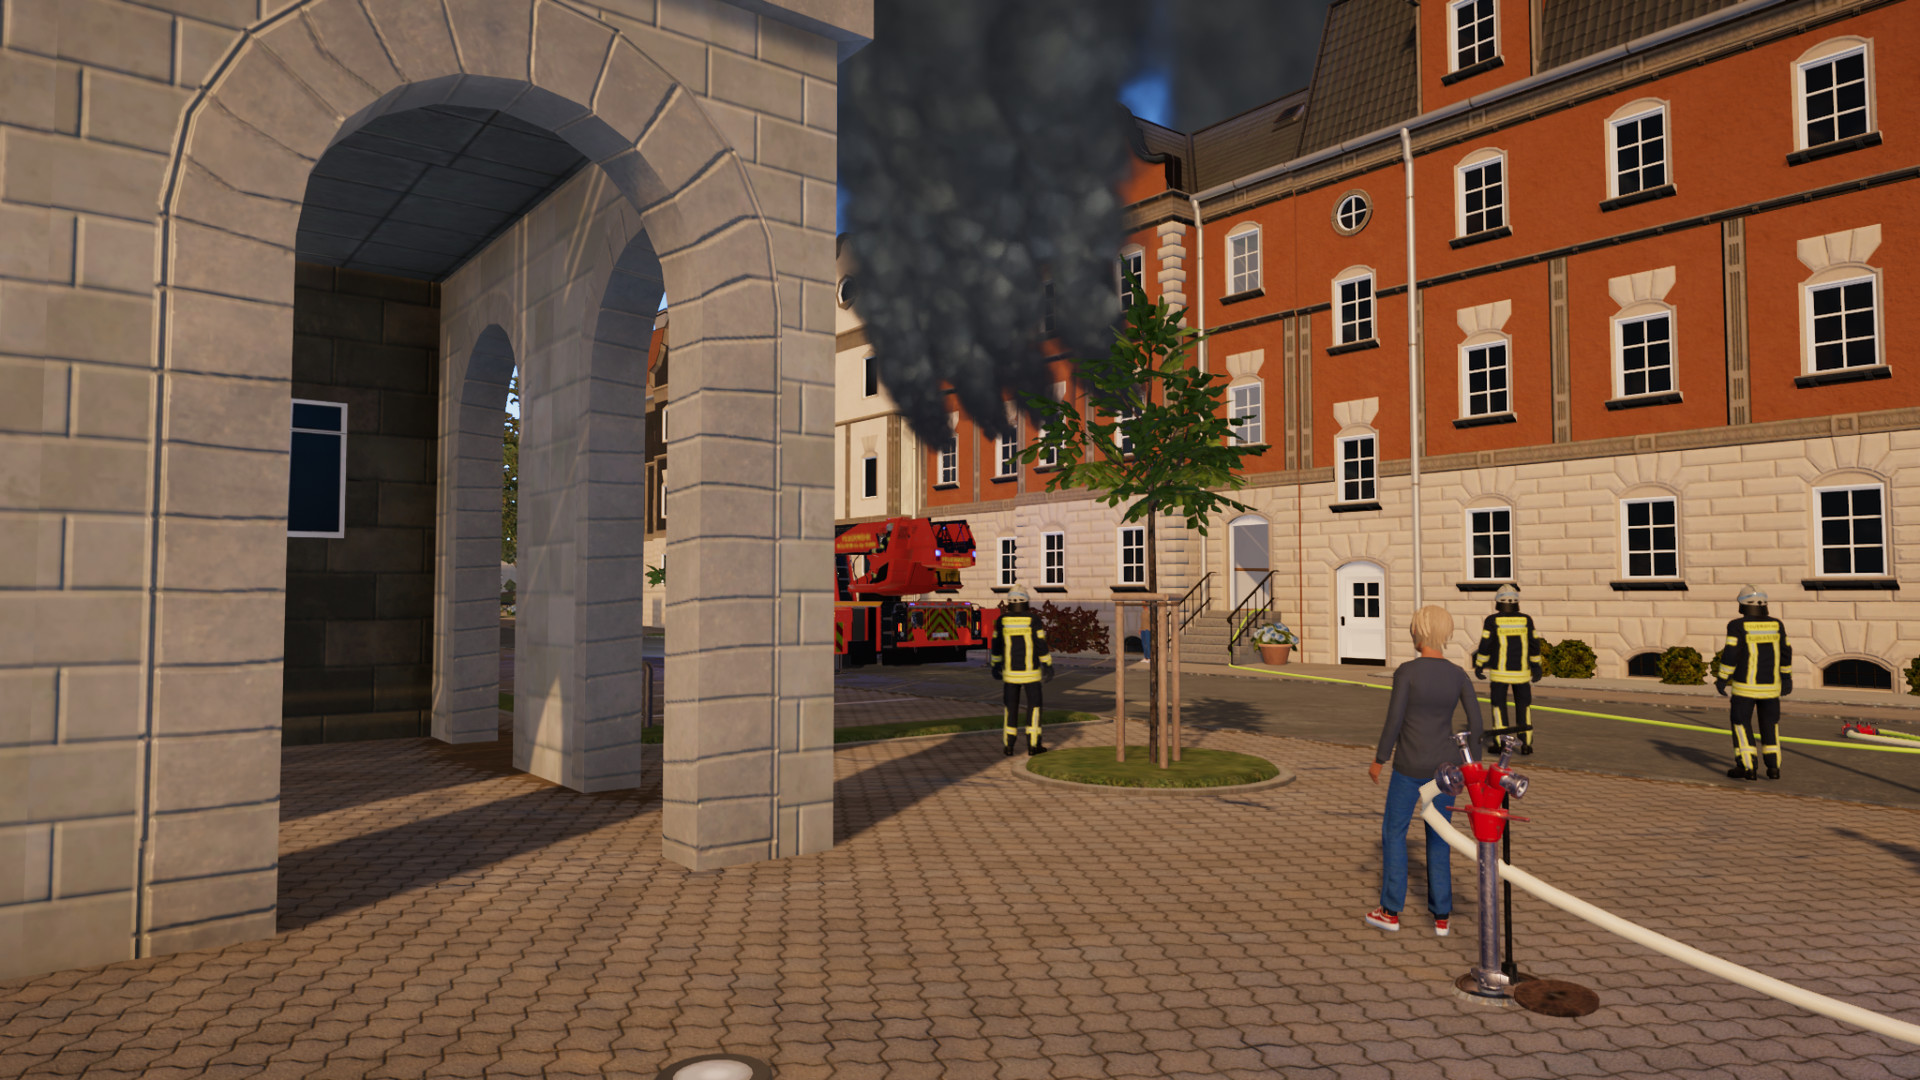 AEROSOFT Die Feuerwehr Simulation 2 Notruf 112 - [PC] : : Games